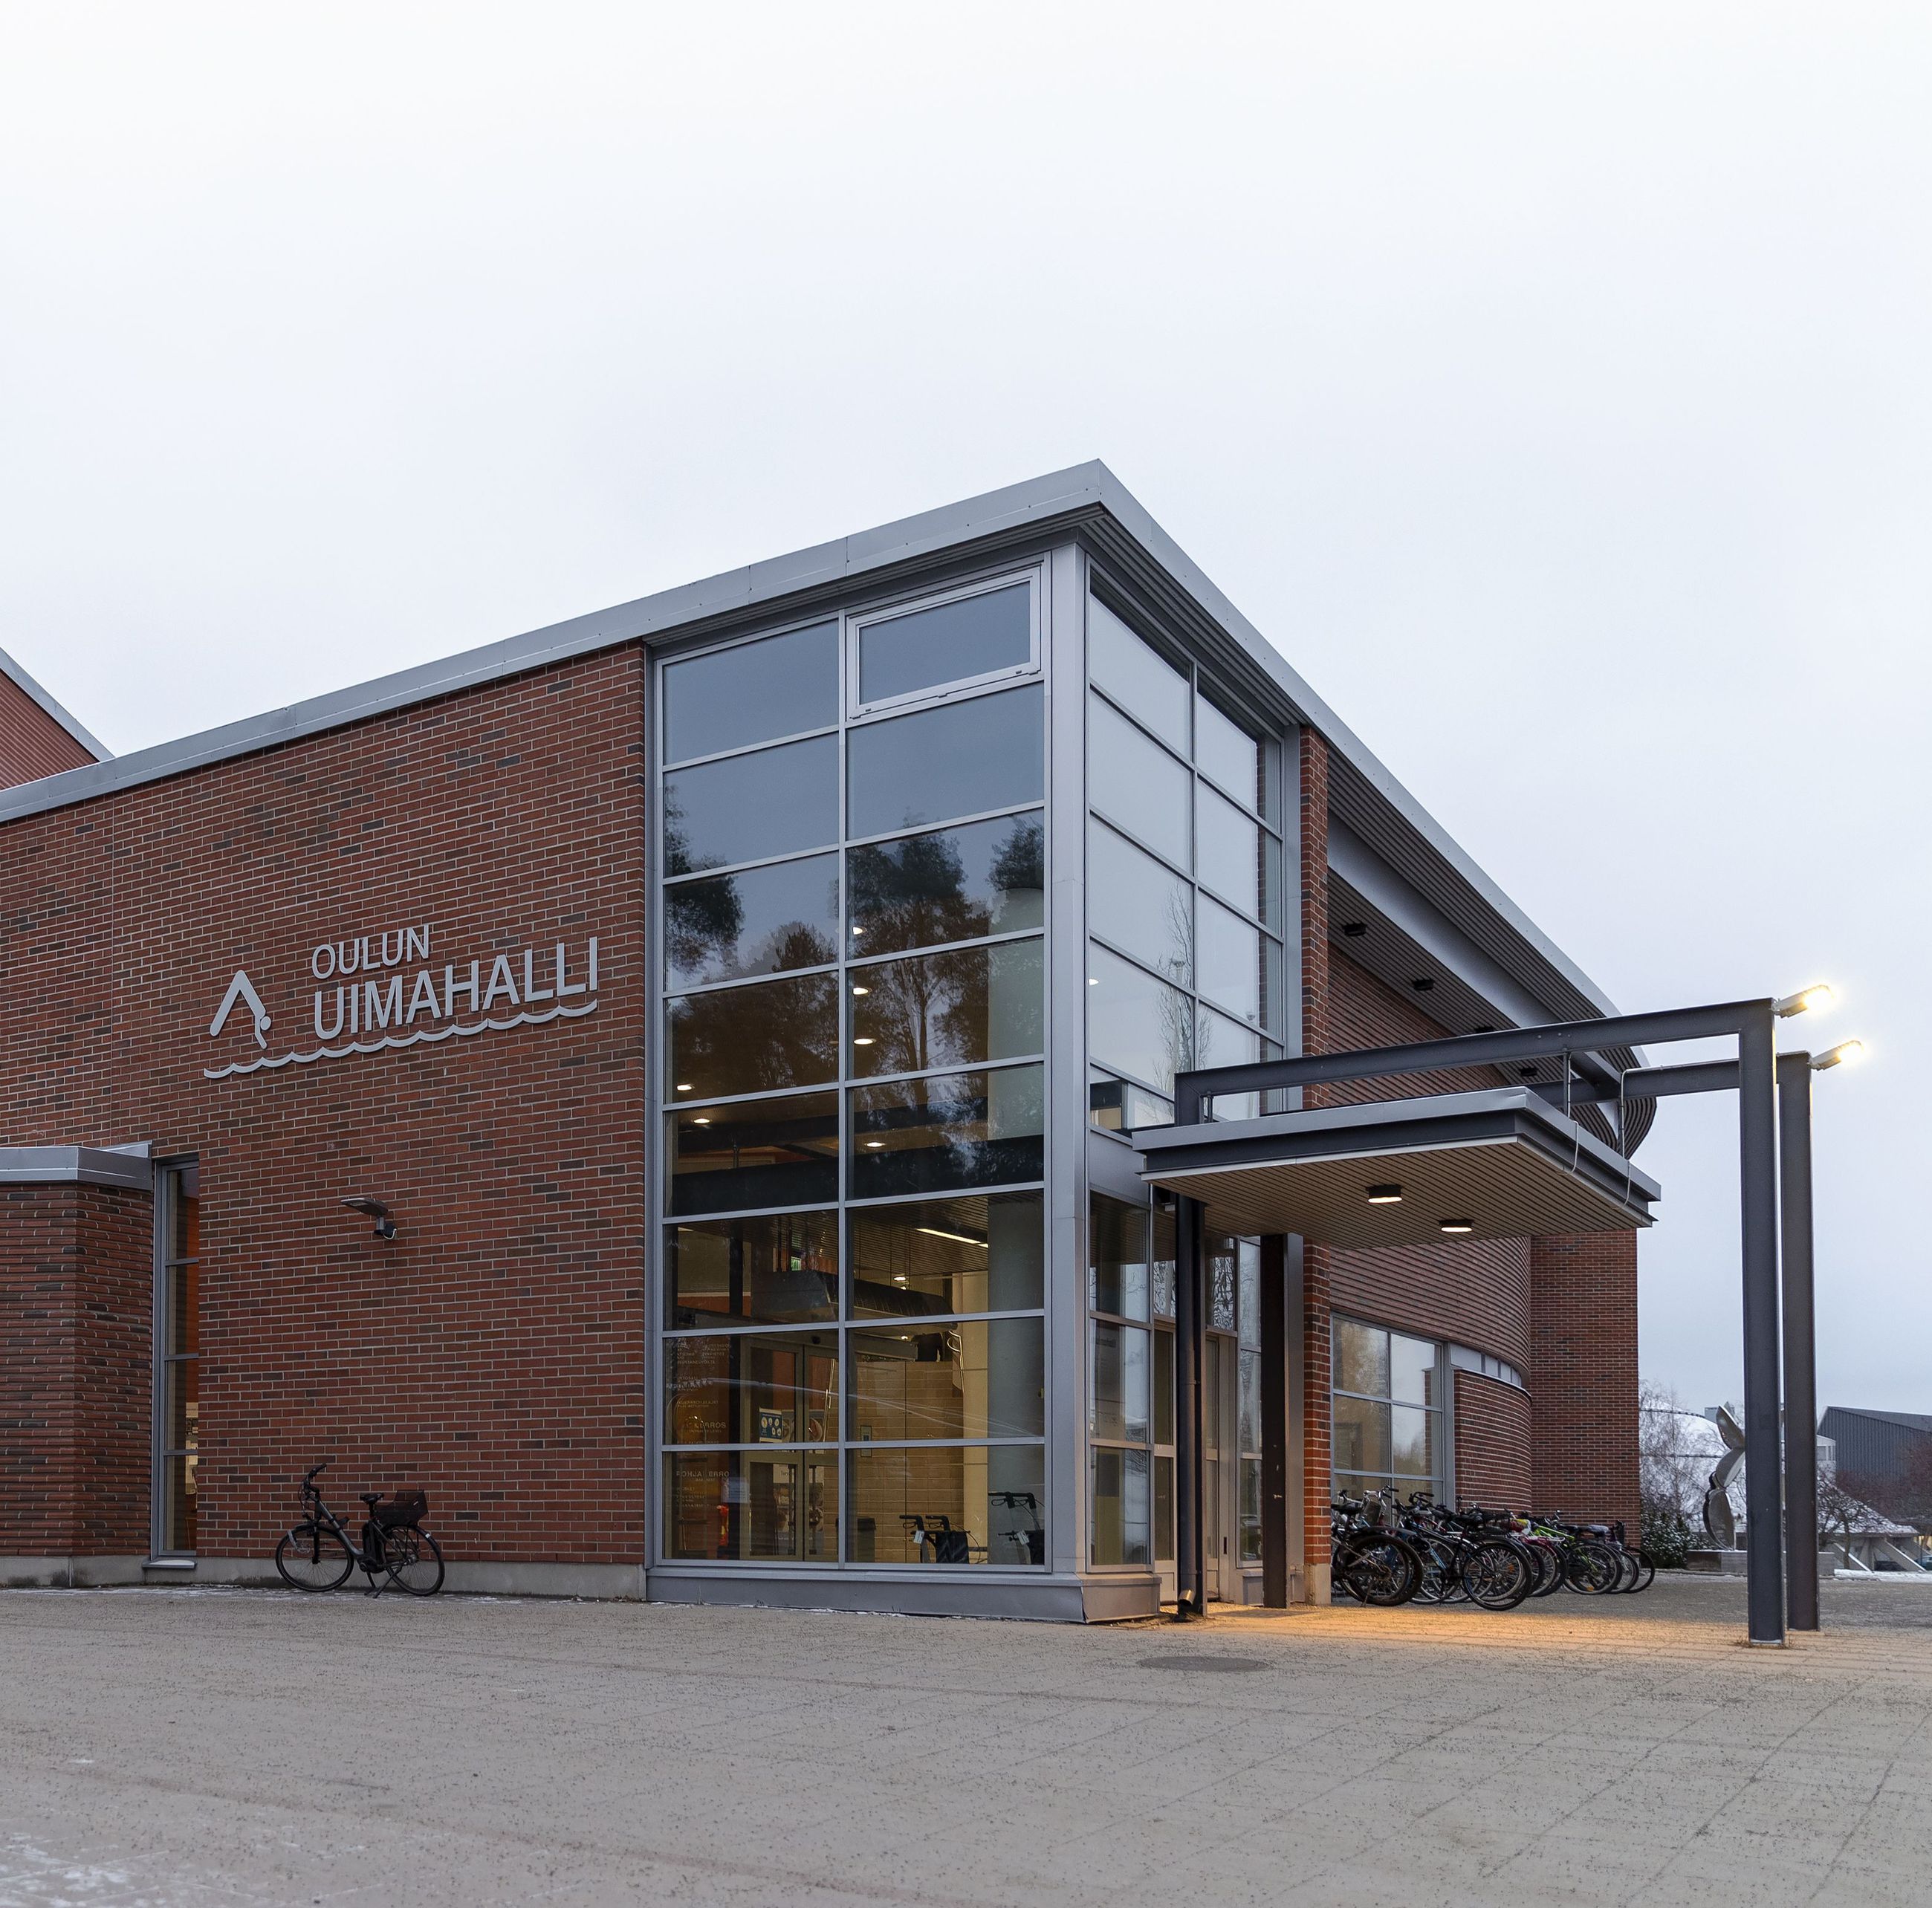 Oulun uimahalliin on suunniteltu remonttia sitten, kun Linnanmaan uimahalli on saatu valmiiksi.